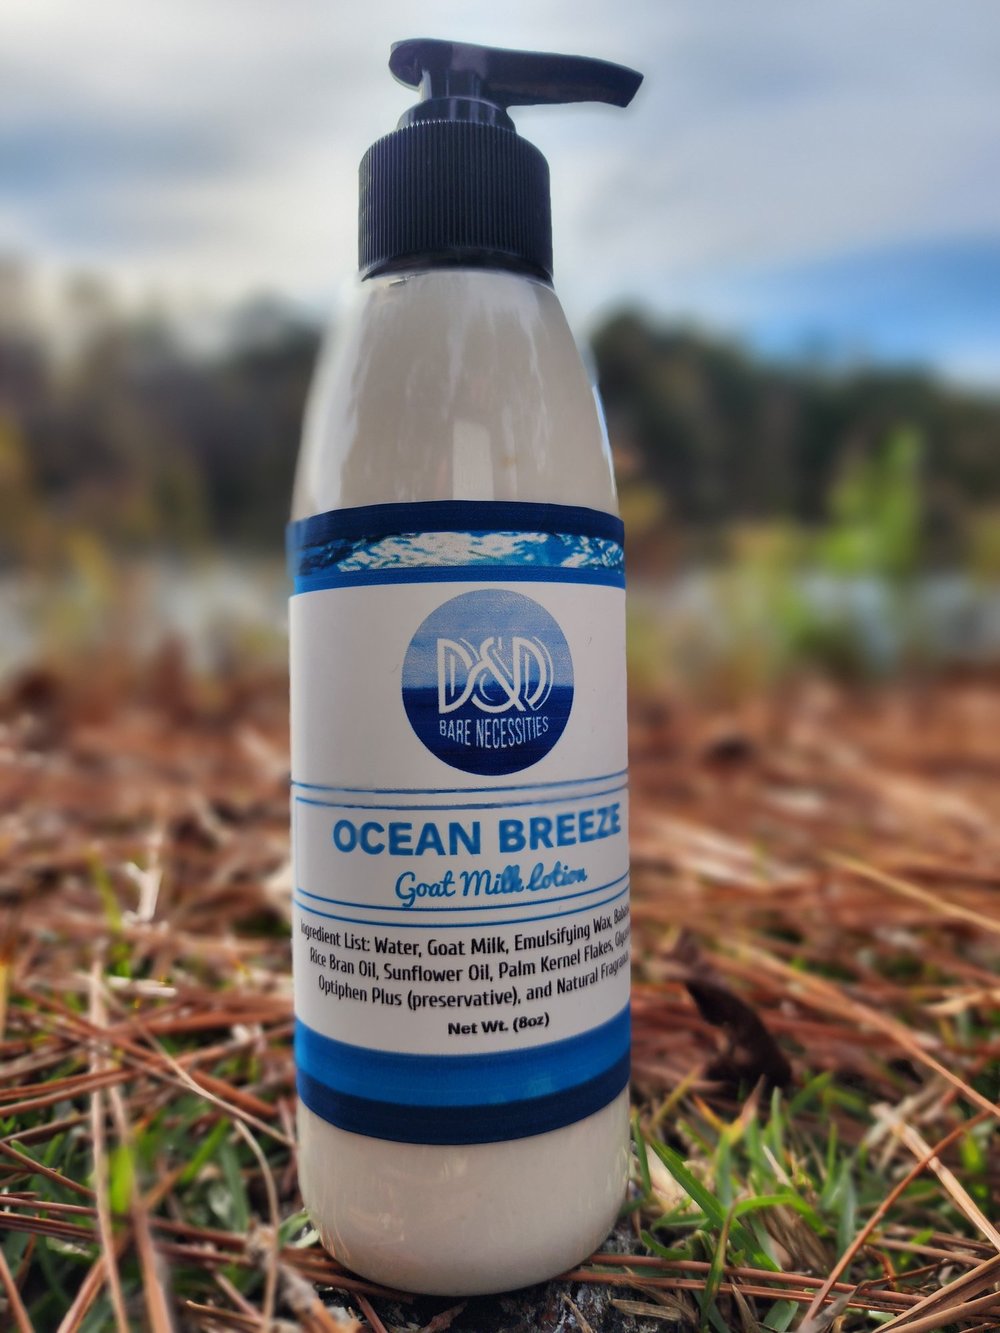 Ocean Breeze — D&D Bare Necessities